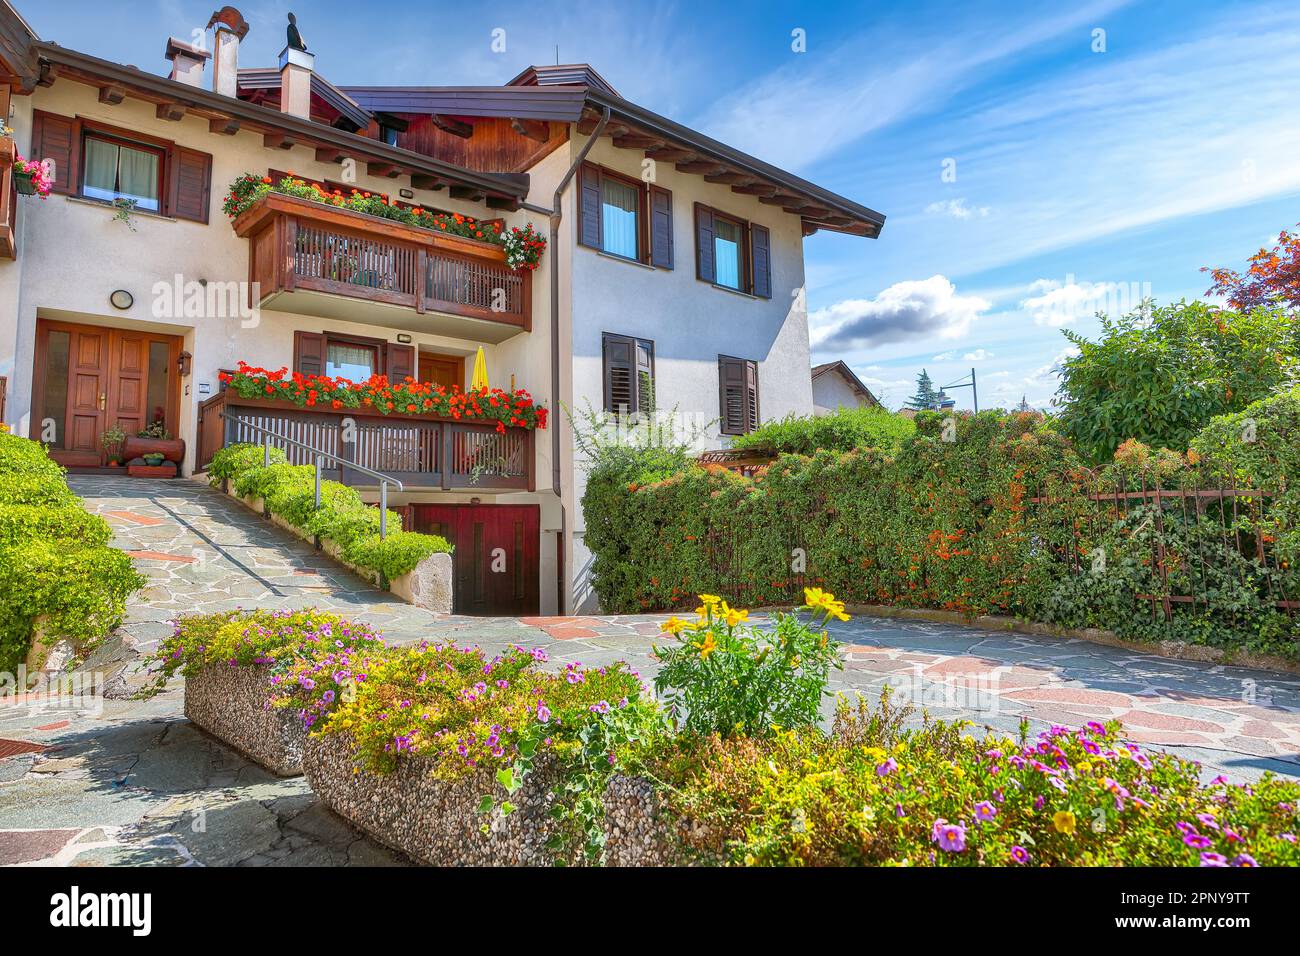 Splendida vista delle case alpine tradizionali con fiori sul balcone della città di Cles. Ubicazione: Cles, Trentino-Alto Adige, Italia, Europa Foto Stock